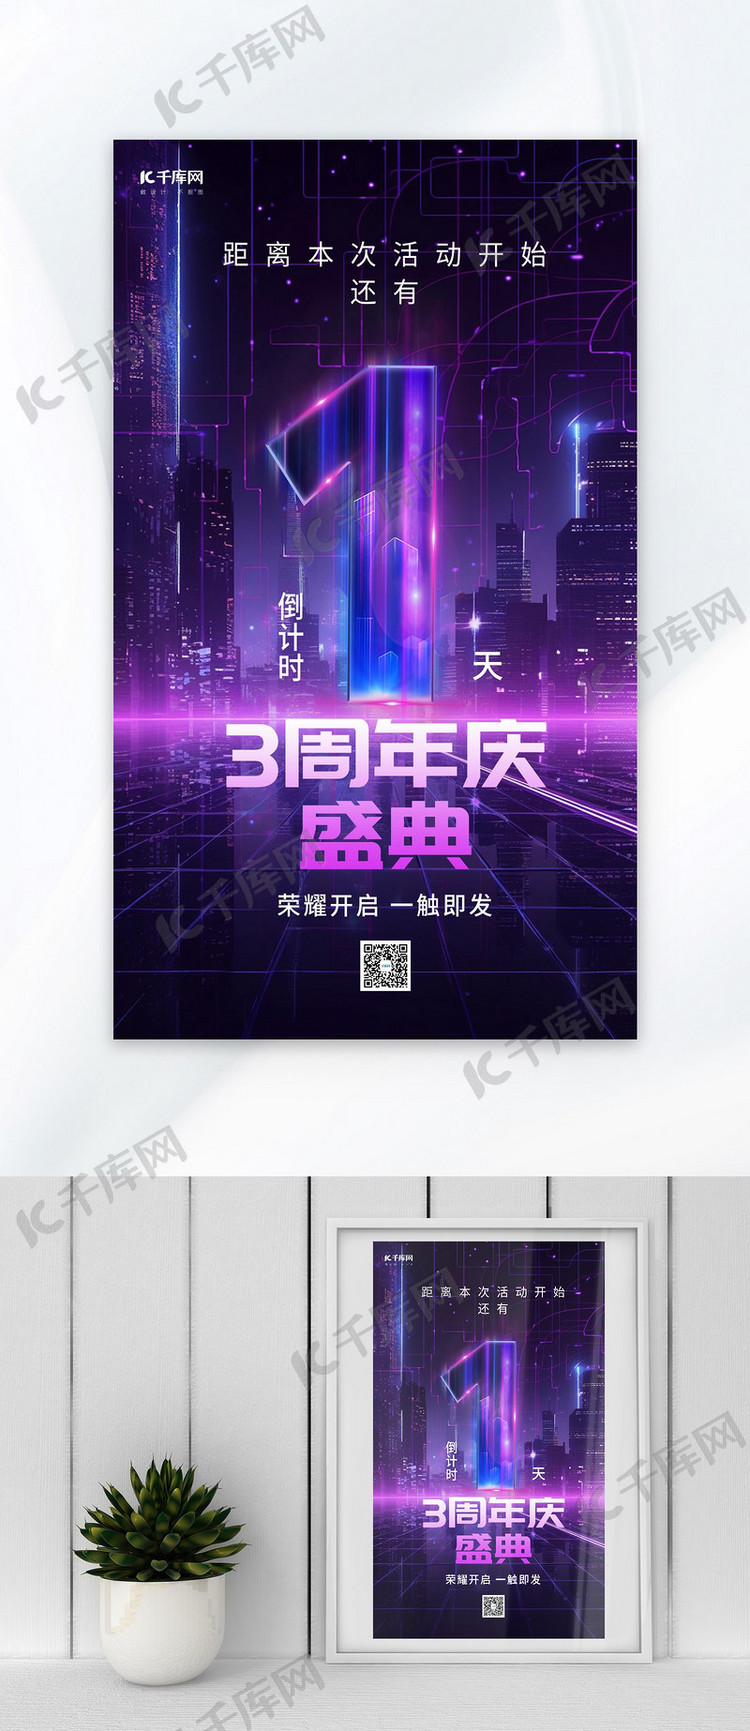 周年庆倒计数字紫色炫酷广告宣传AIGC广告宣传海报